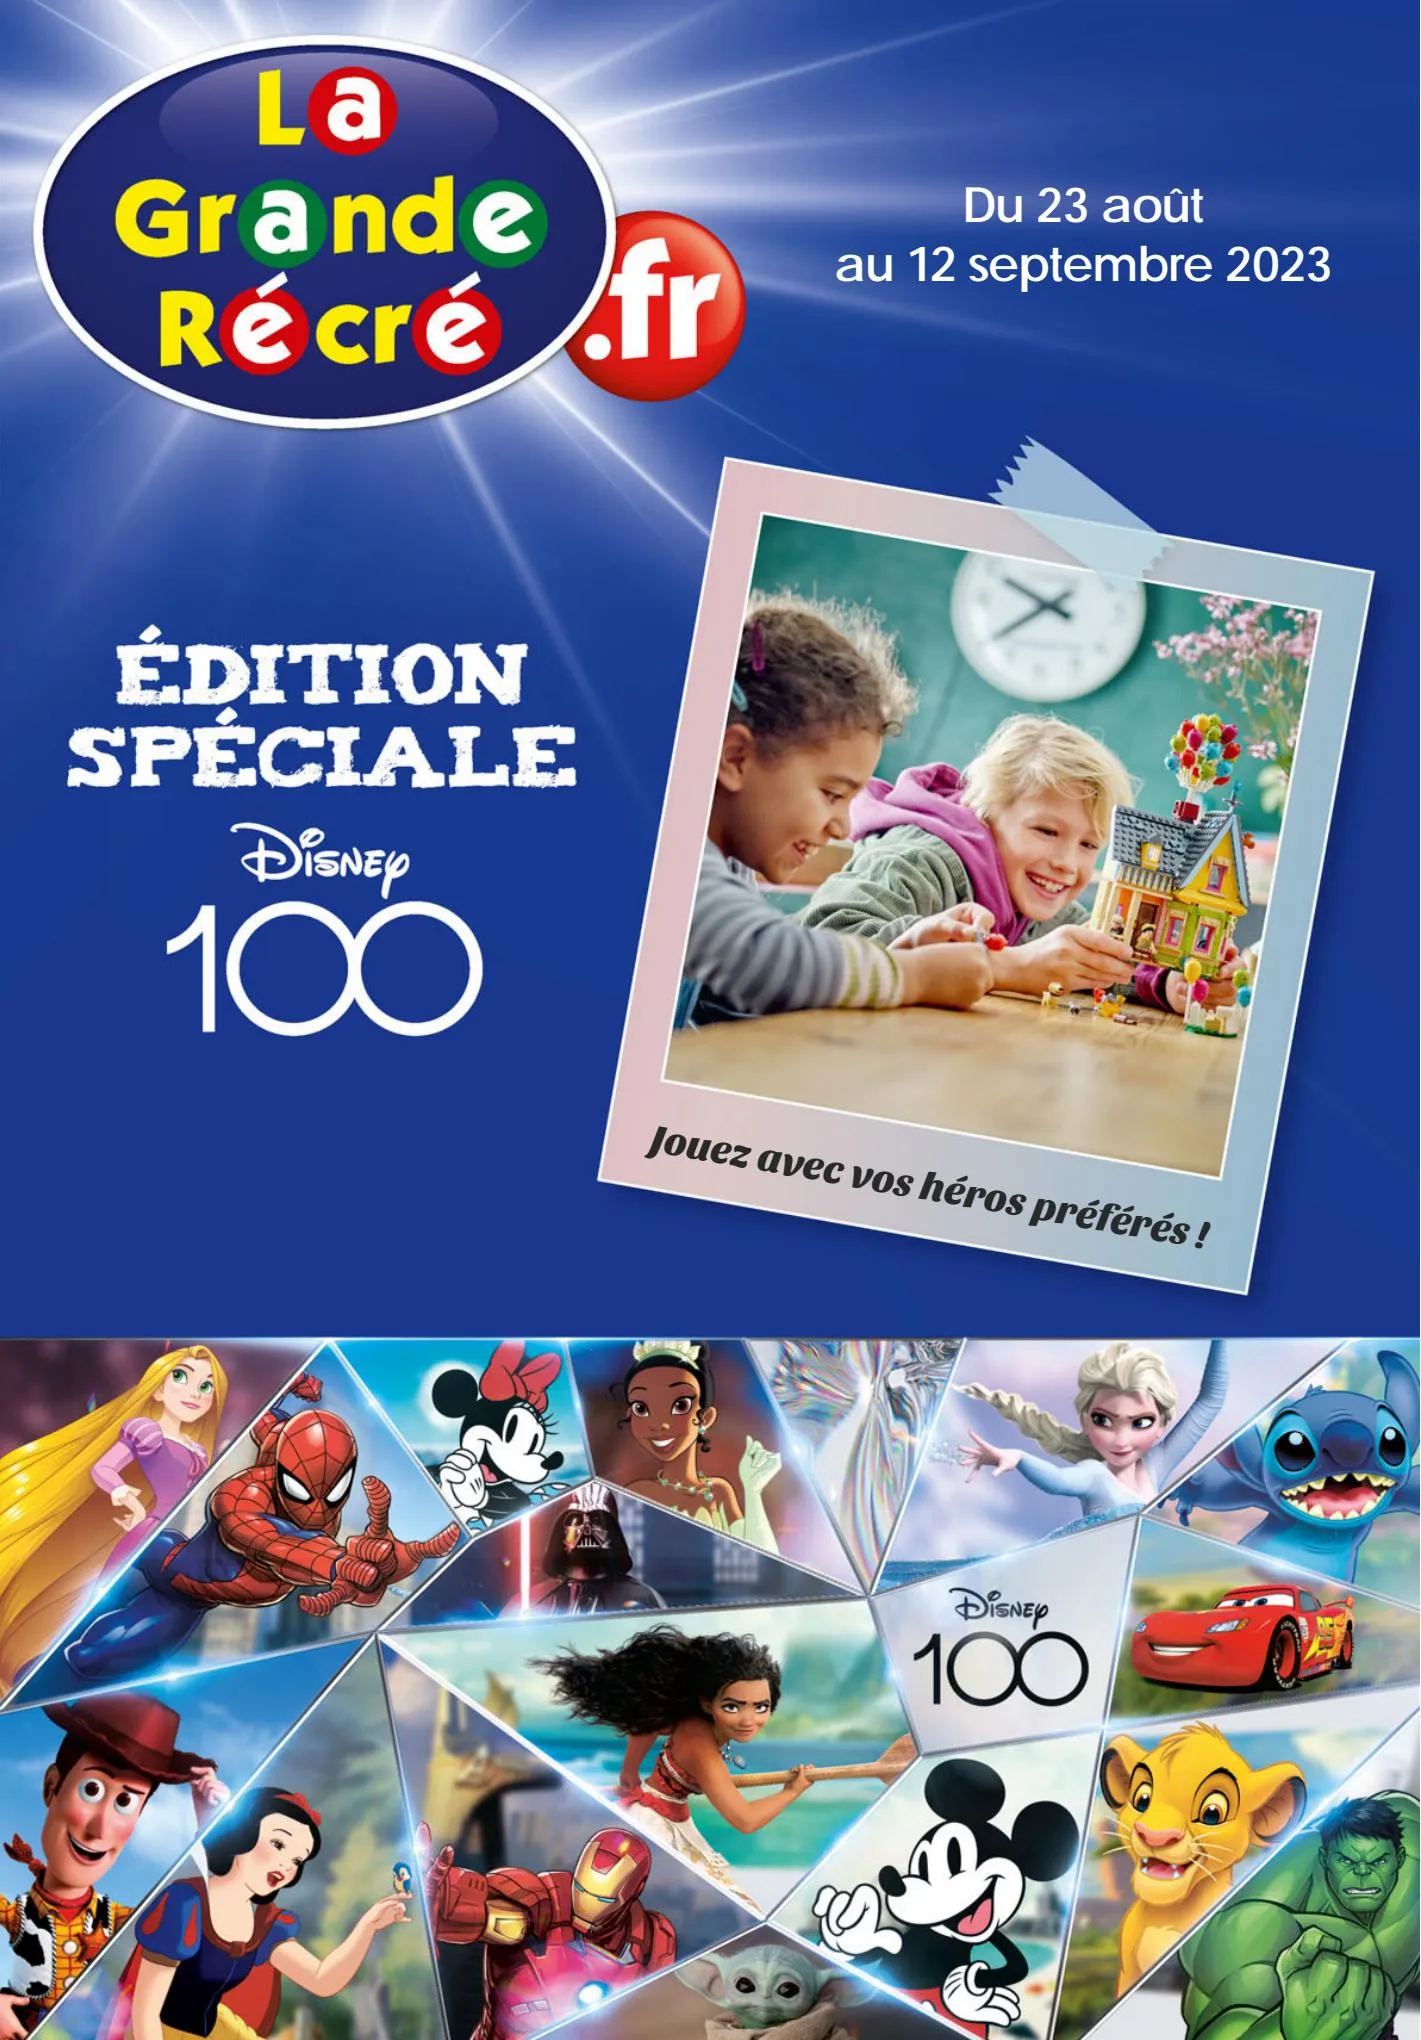 Catalogue Edition speciale Disney 100, page 00001